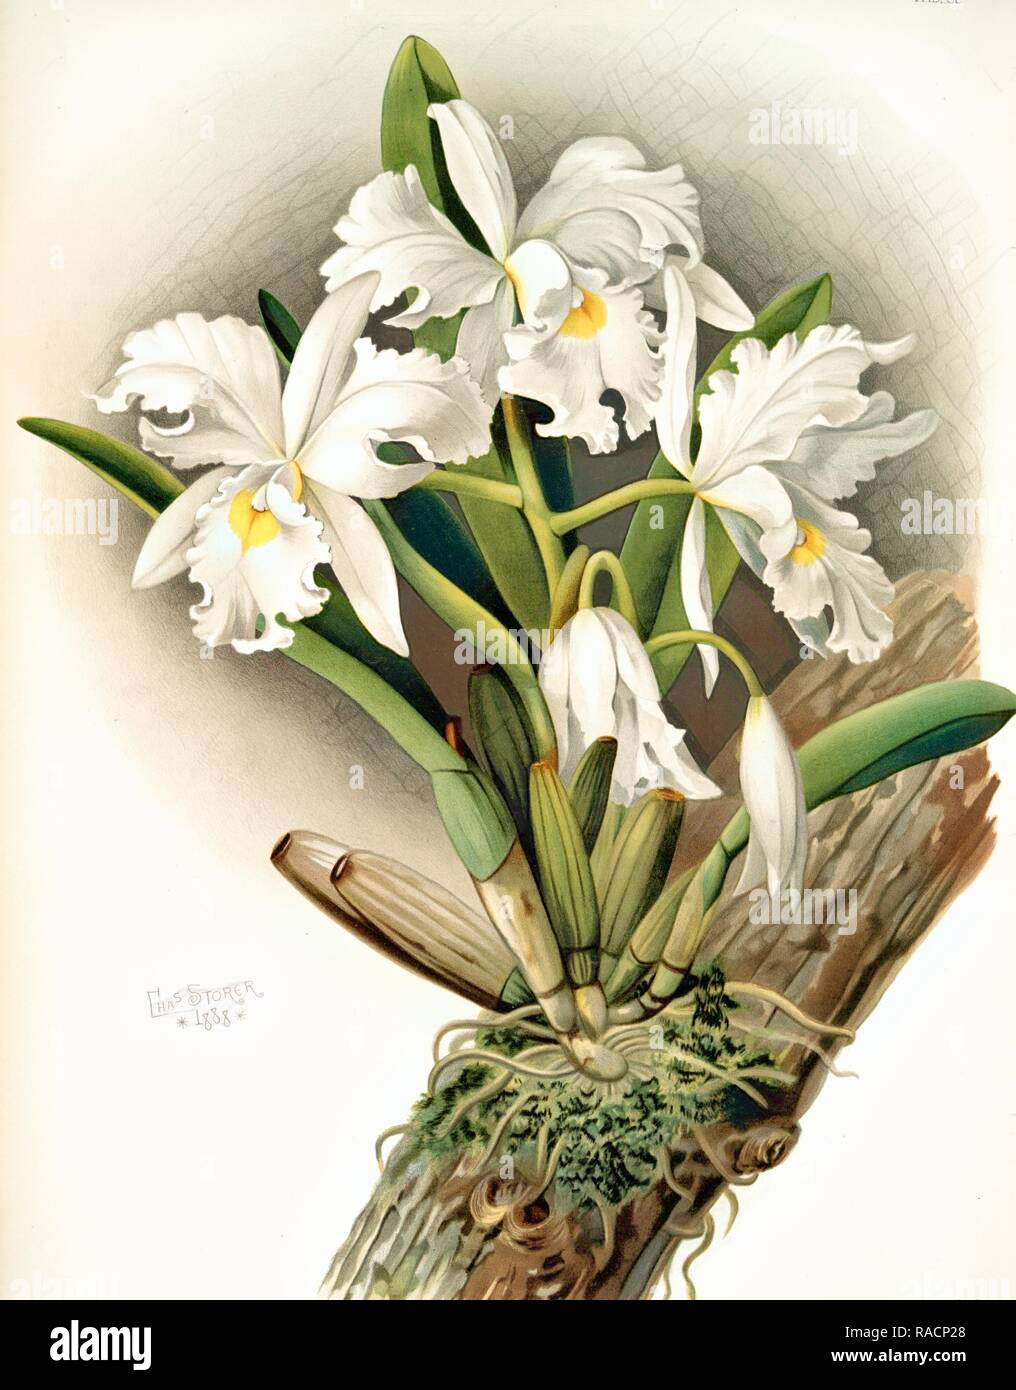 Cattleya rochellensis, Sander, F. (Frederick), 1847-1920, (Author), Storer, Charles, (Artist), Leutzsch, Gustav, ( reimagined Stock Photo